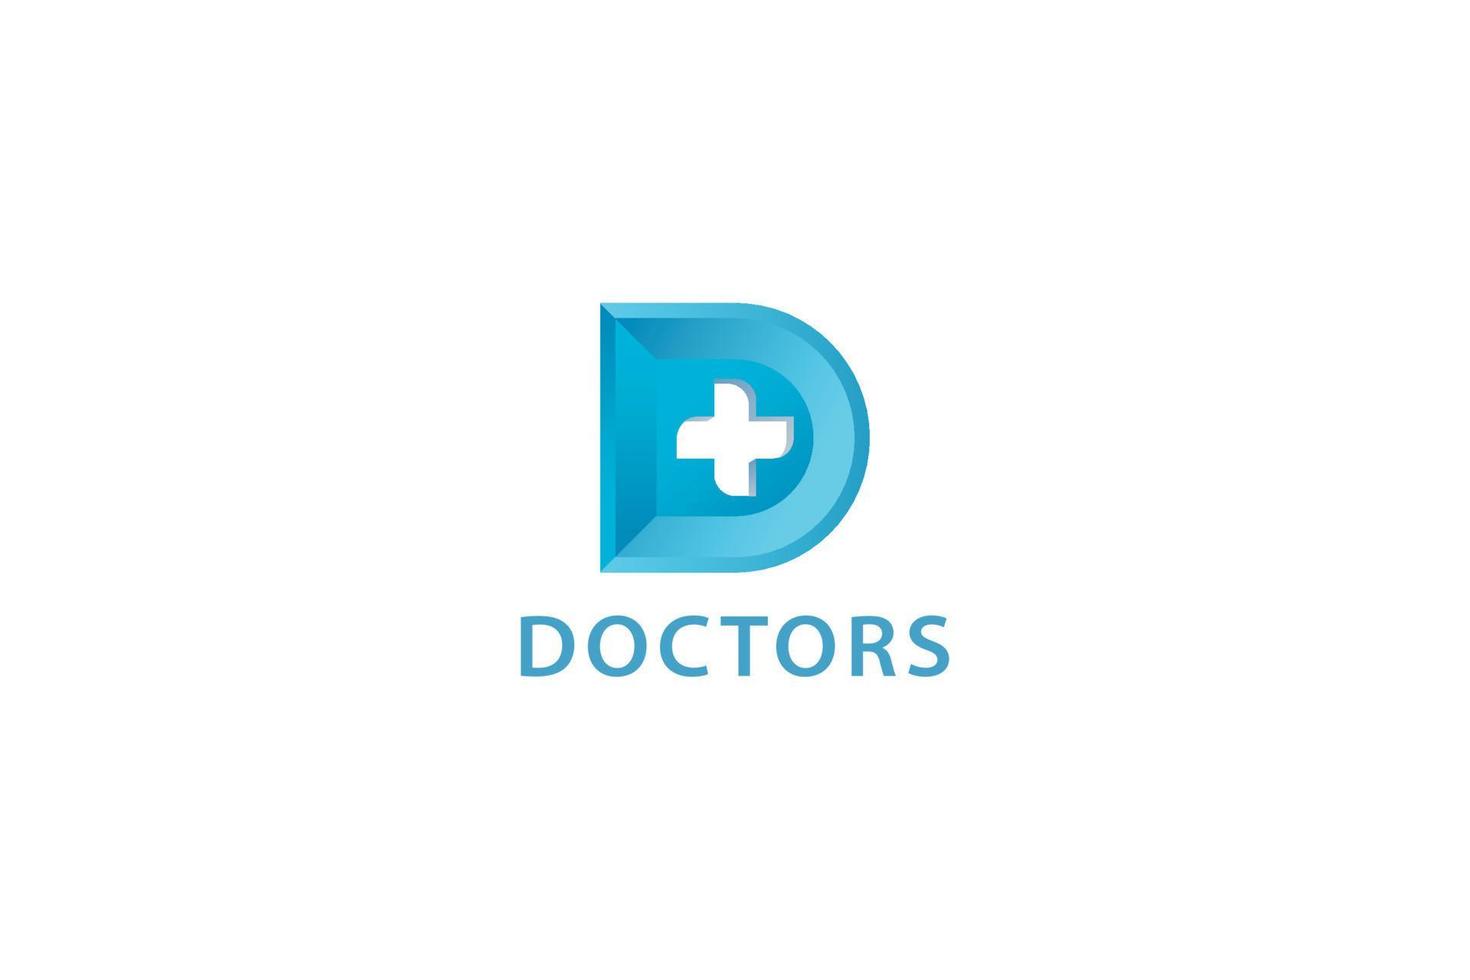 Letter D creative 3d blue color doctors logo vector